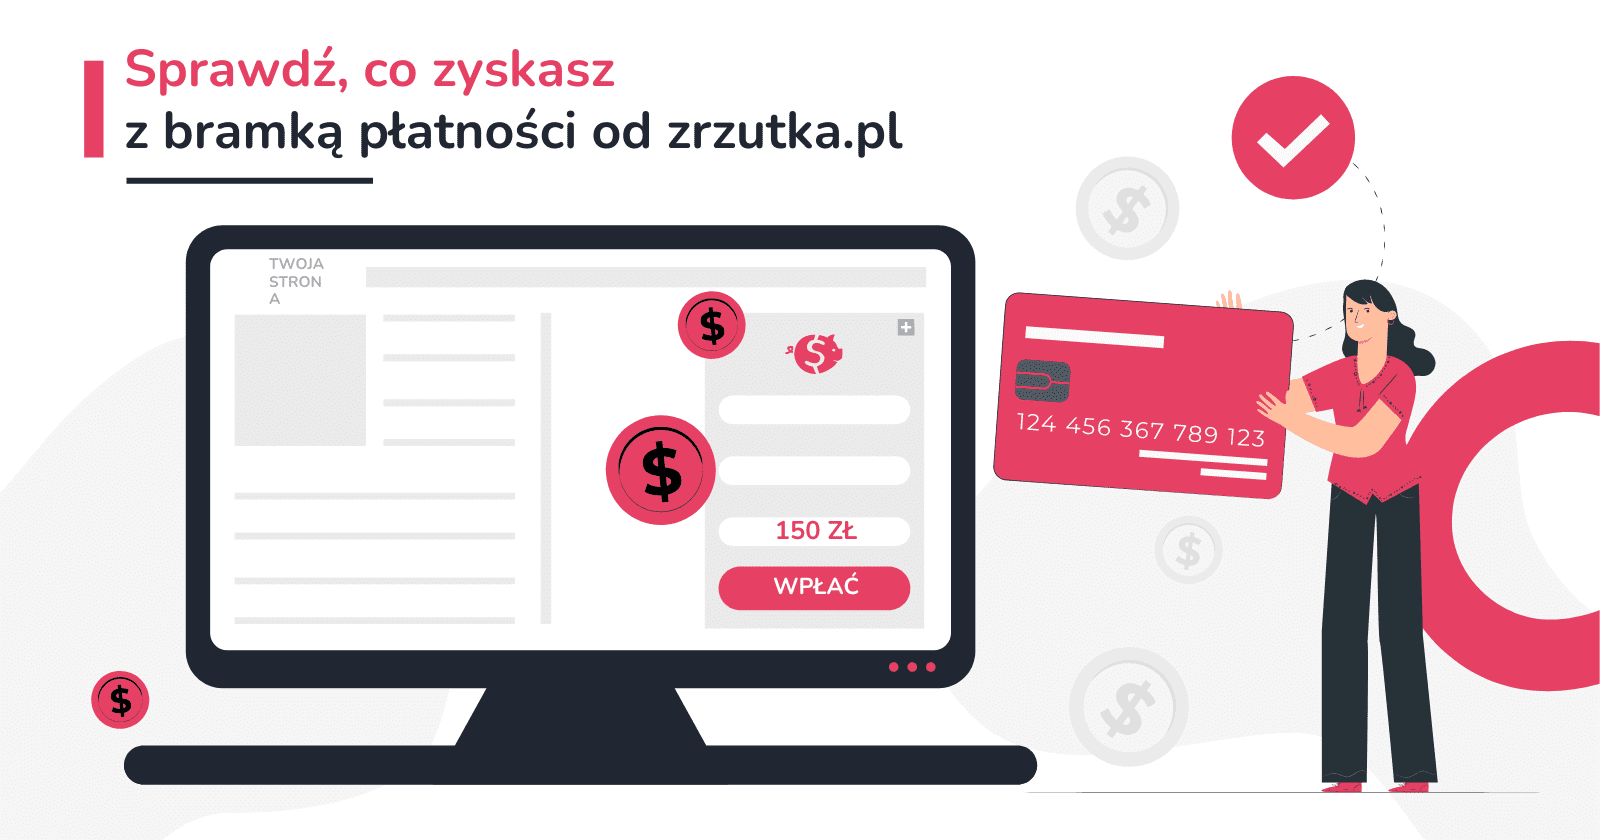 Sprawdź, co zyskasz z bramką płatności od zrzutka.pl